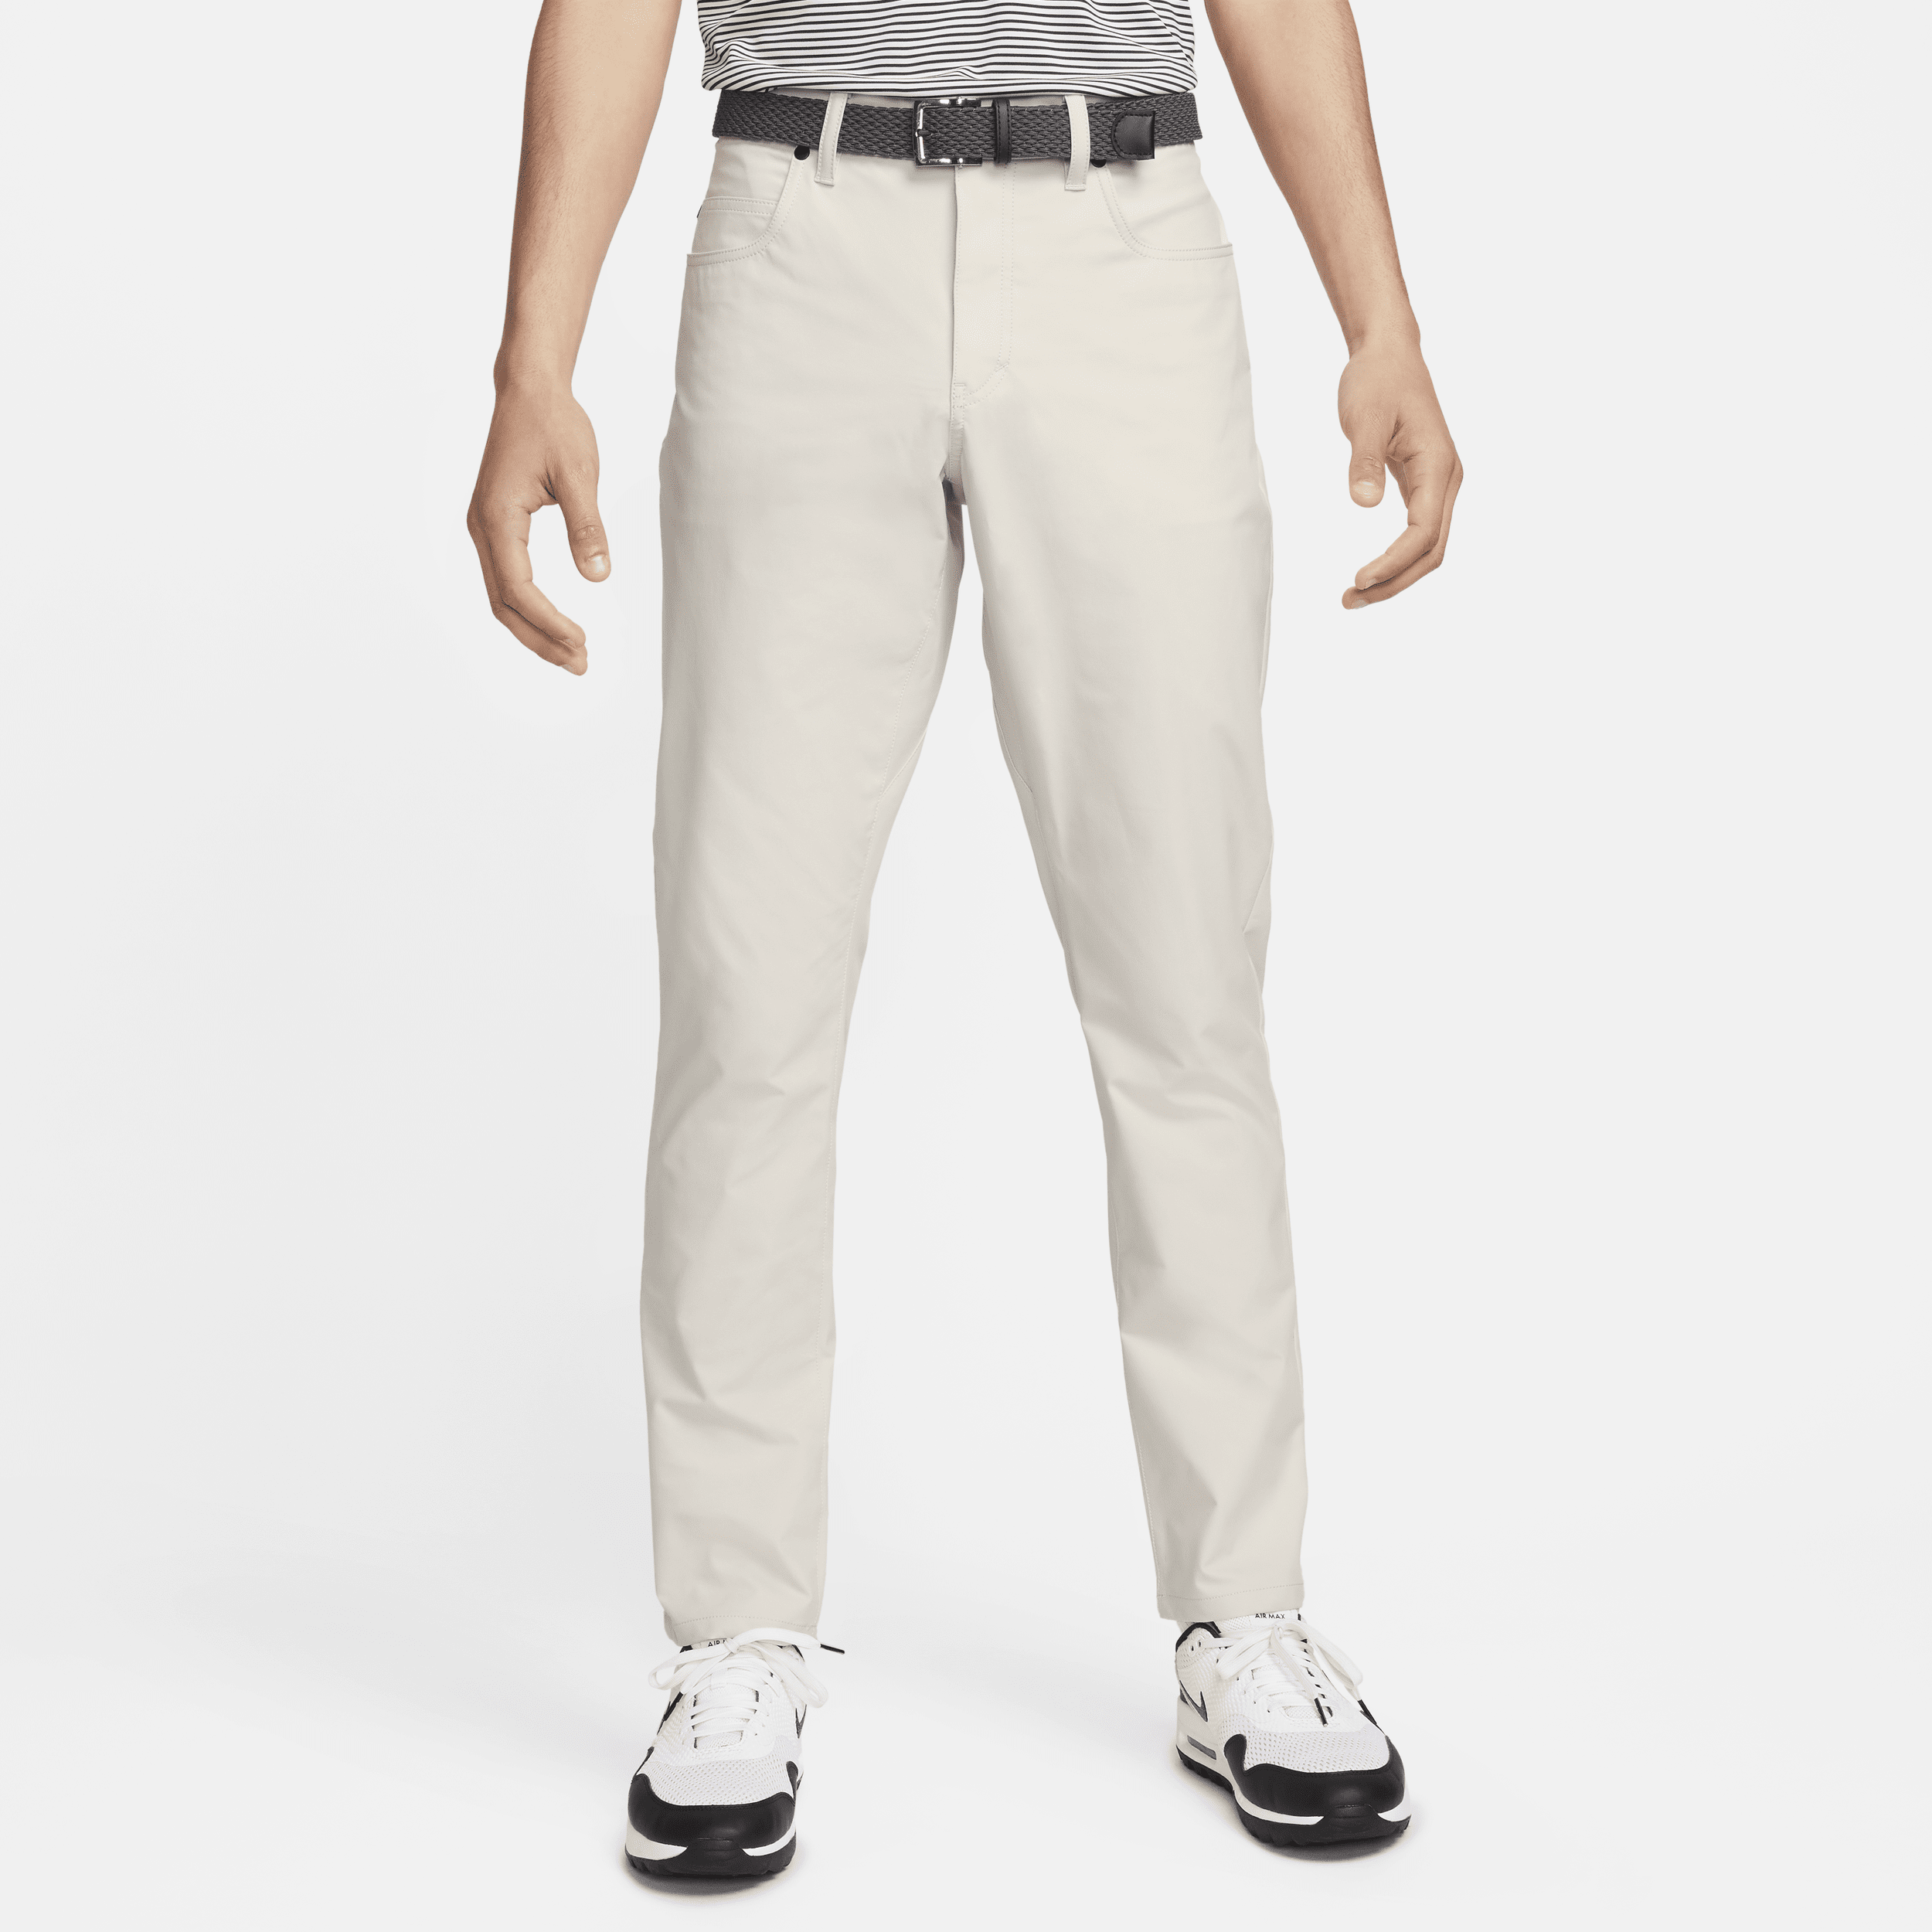 Nike Tour-golfbukser med 5 lommer og slank pasform til mænd - grå